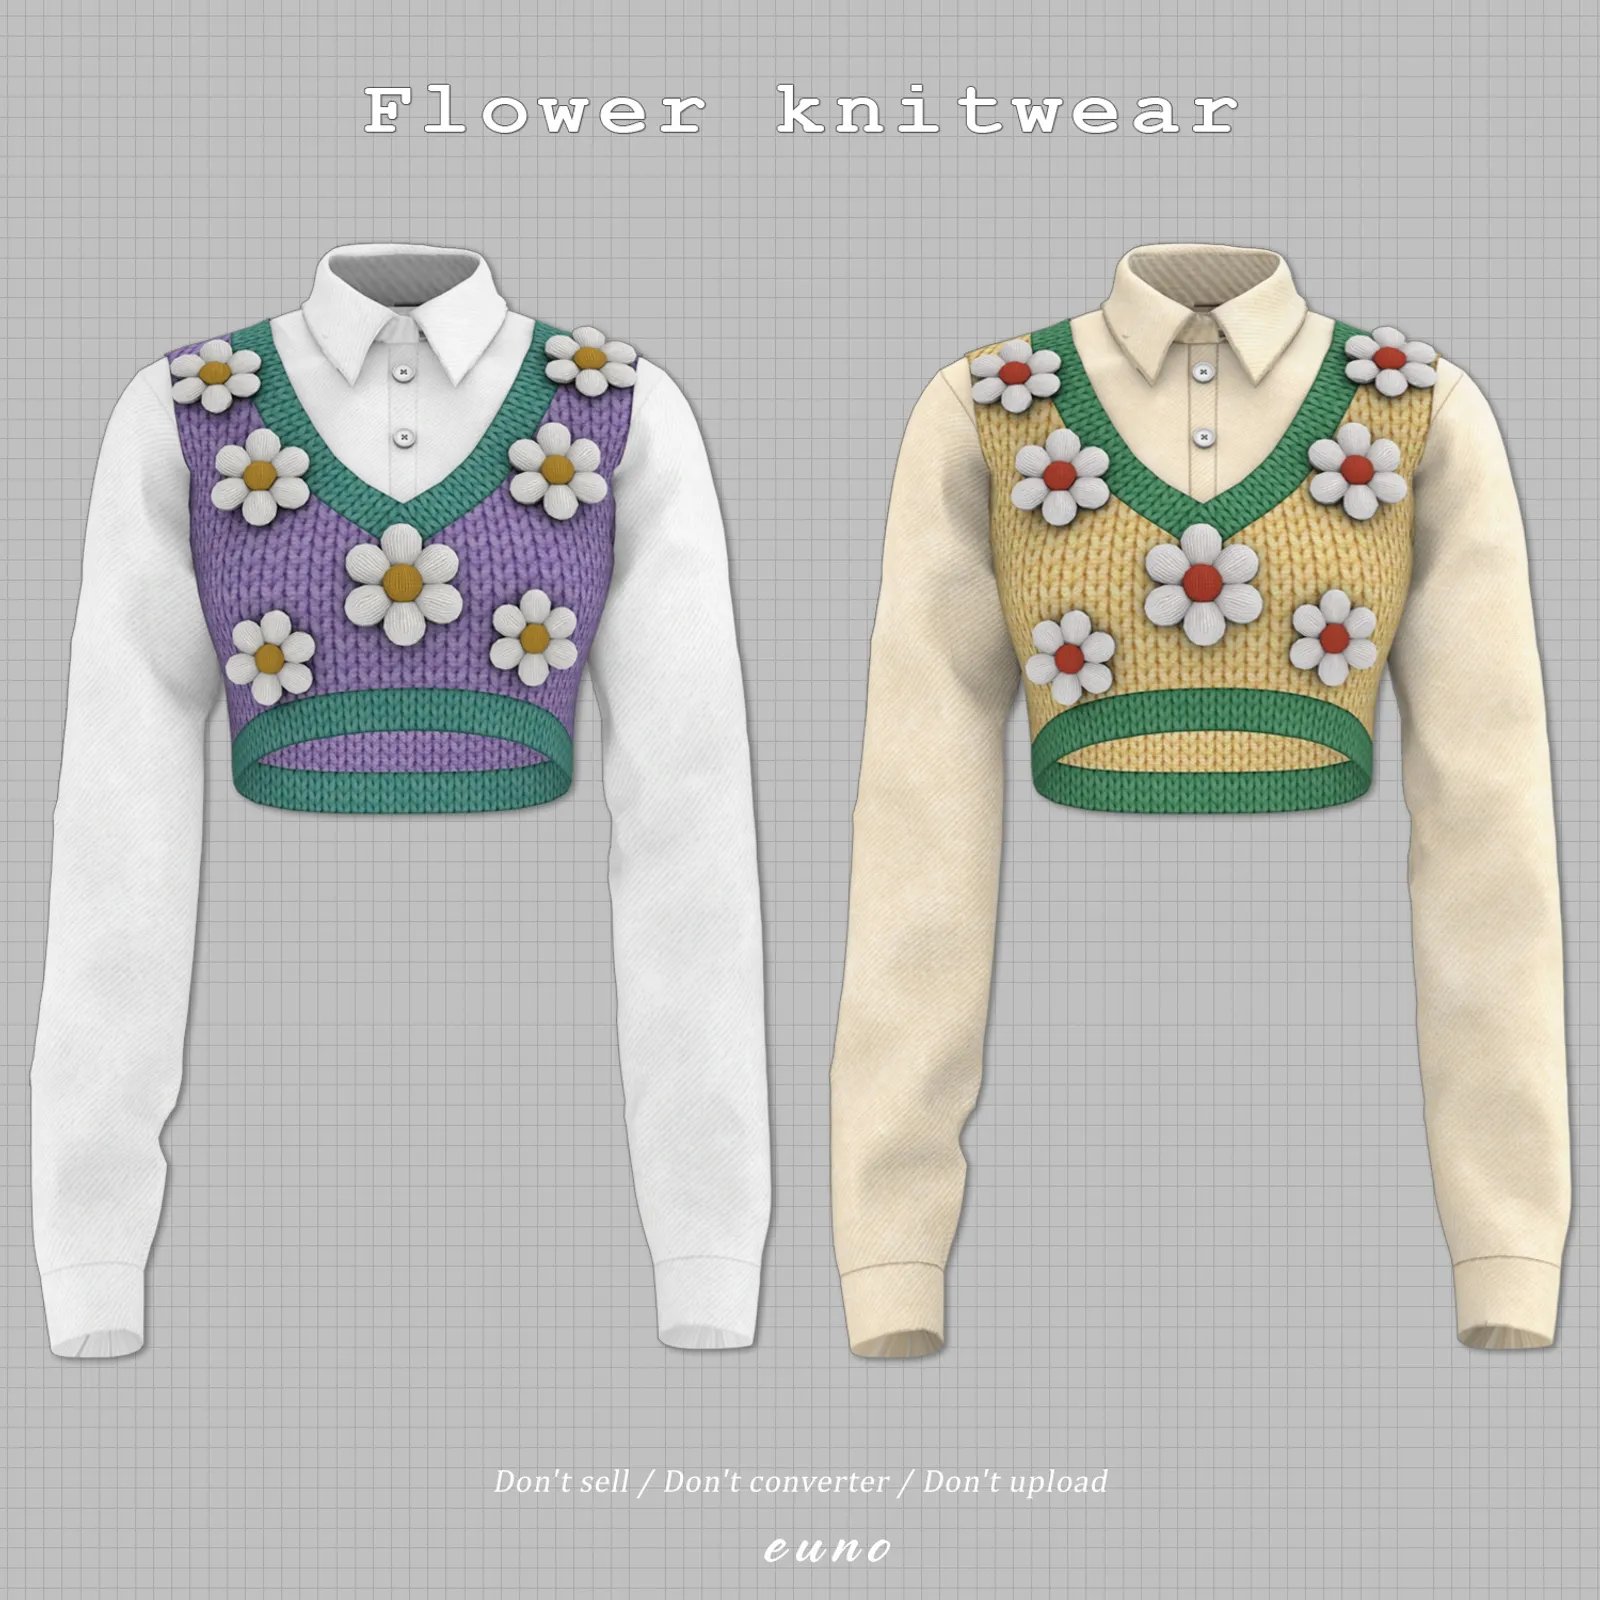 Flower knitwear